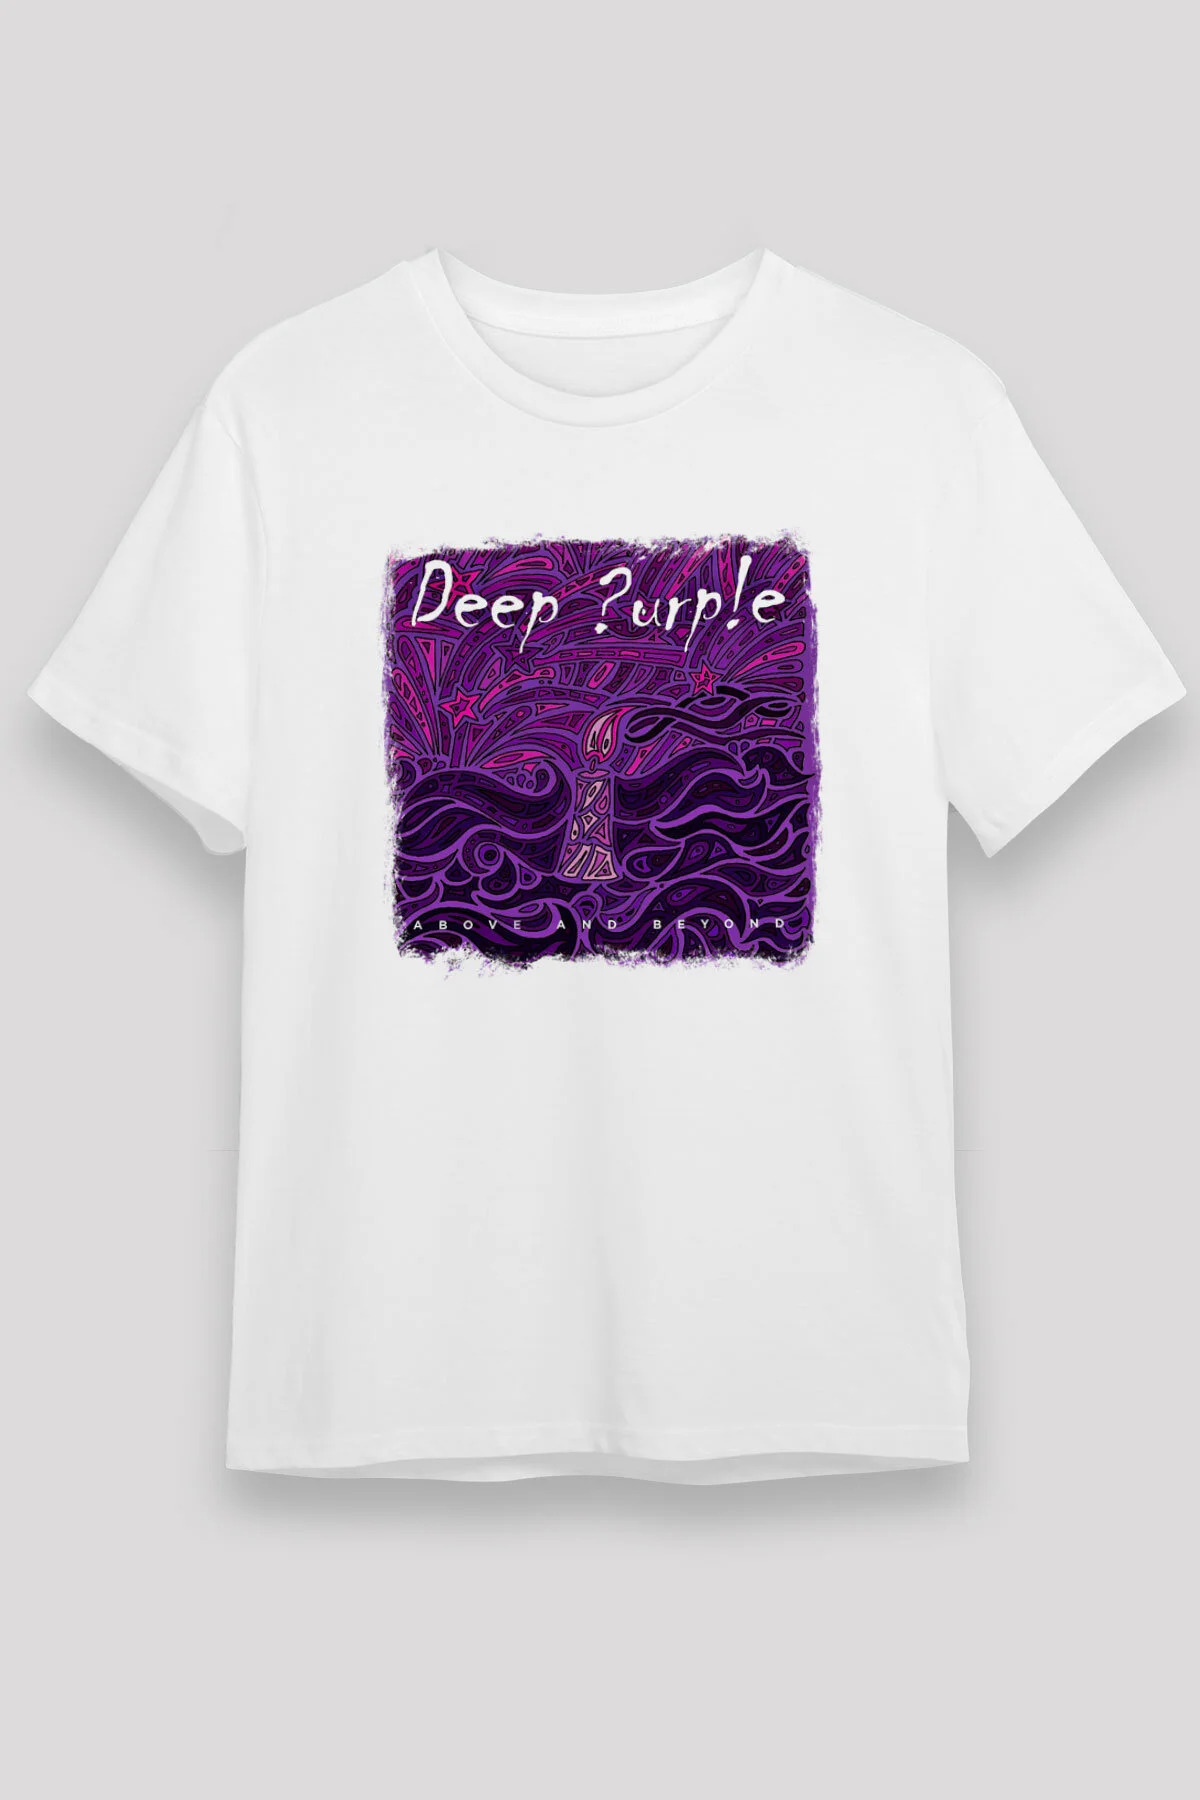 Deep Purple T shirt, Music Band ,Unisex Tshirt 04